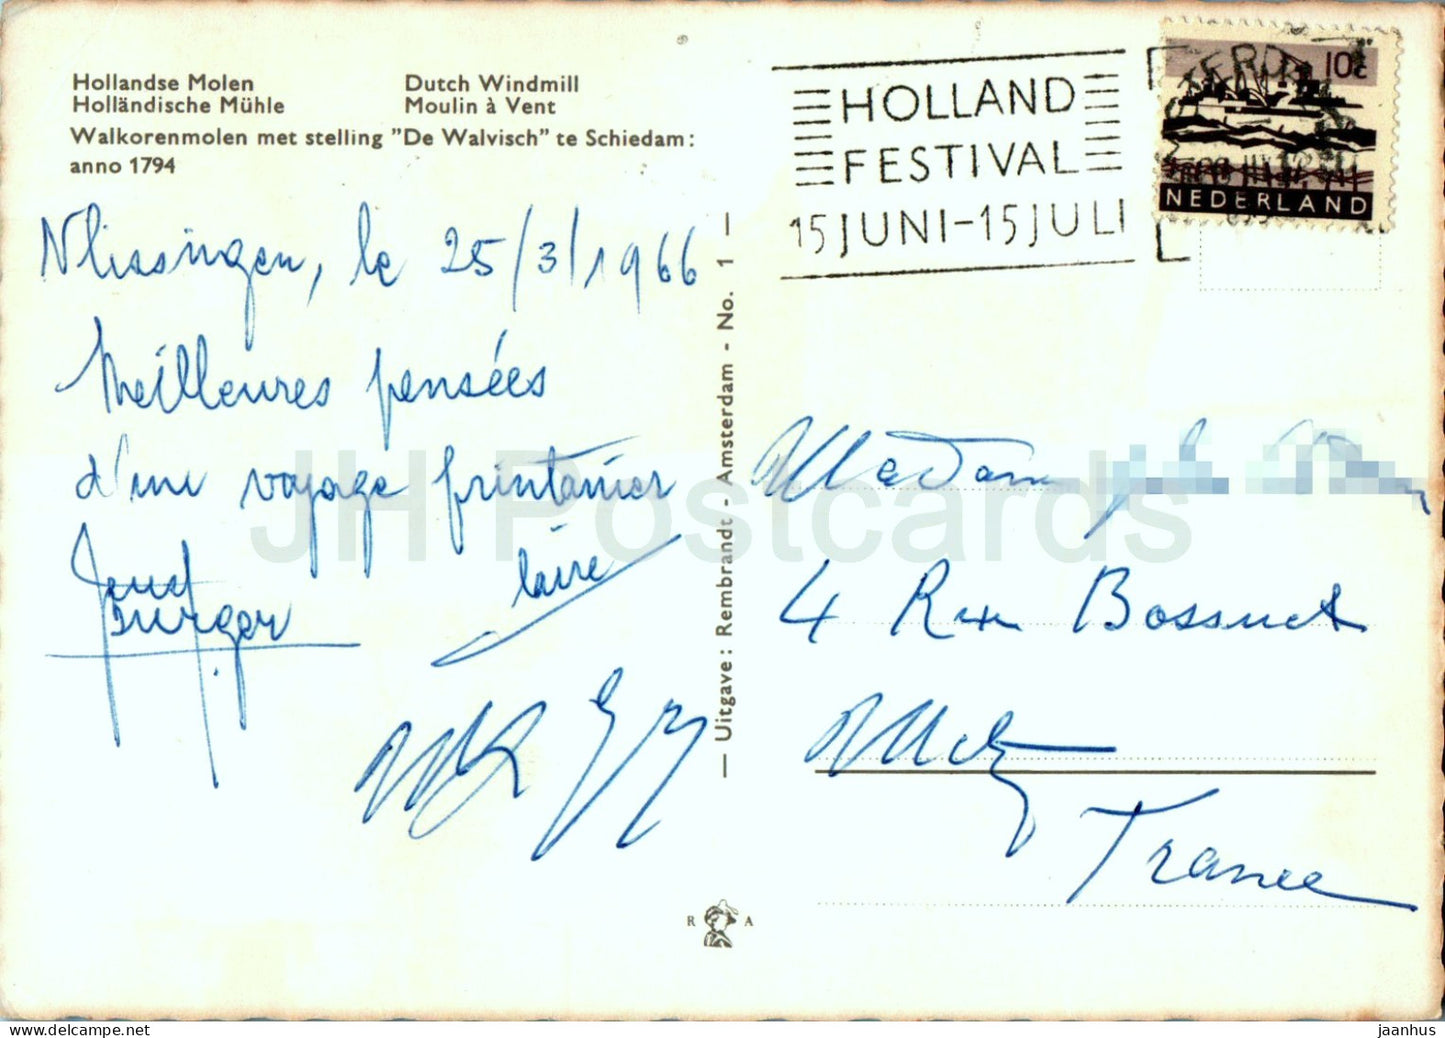 Hollandse Molen - Moulin à vent hollandais - 1966 - Pays-Bas - d'occasion 